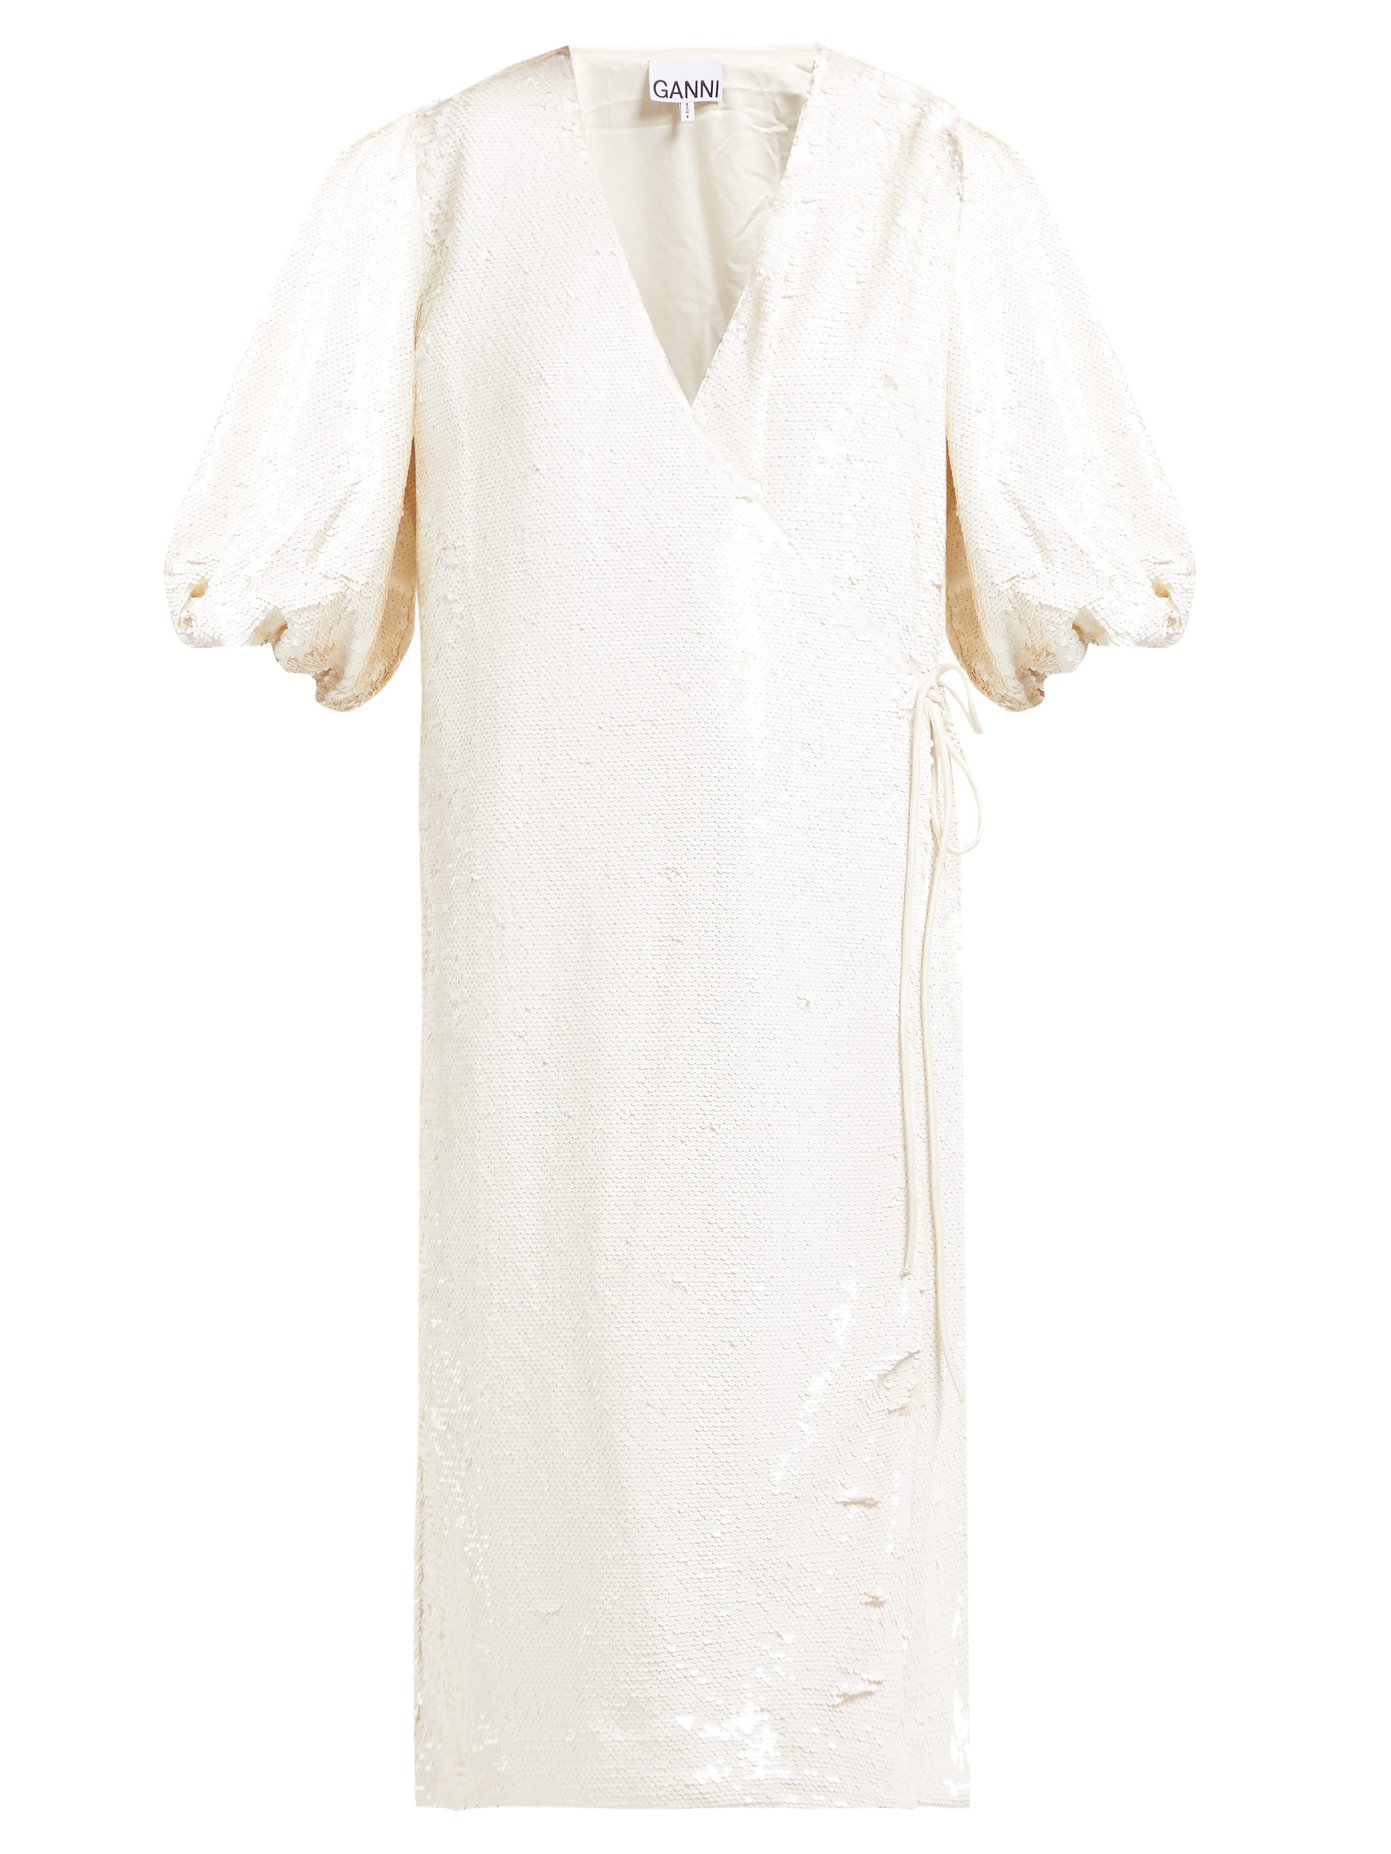 ganni white dress